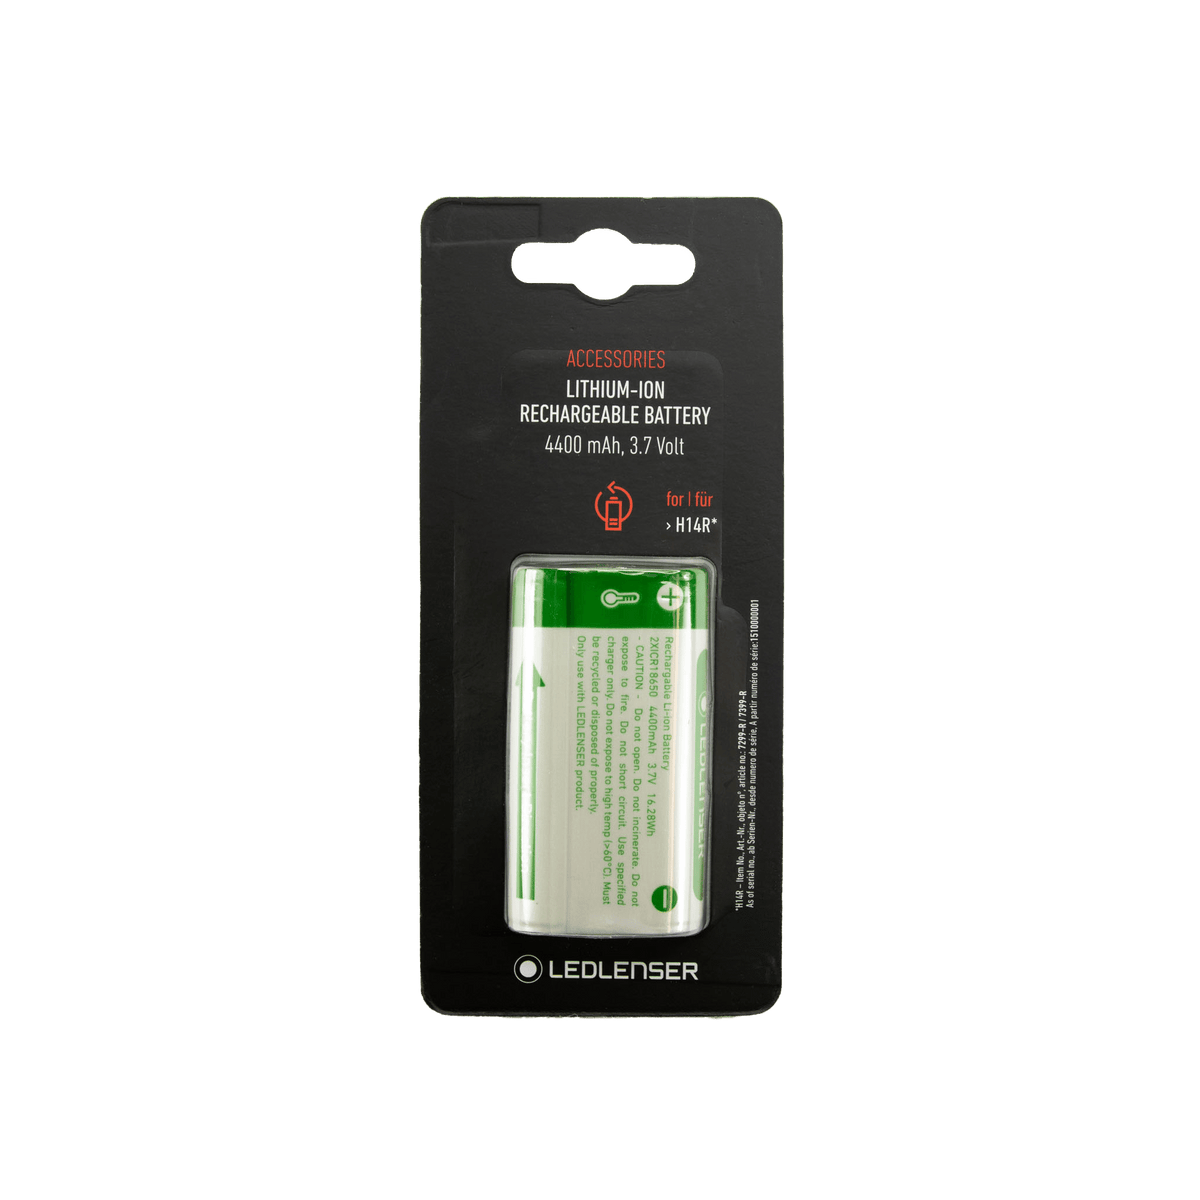 Ledlenser H14R.2 Battery